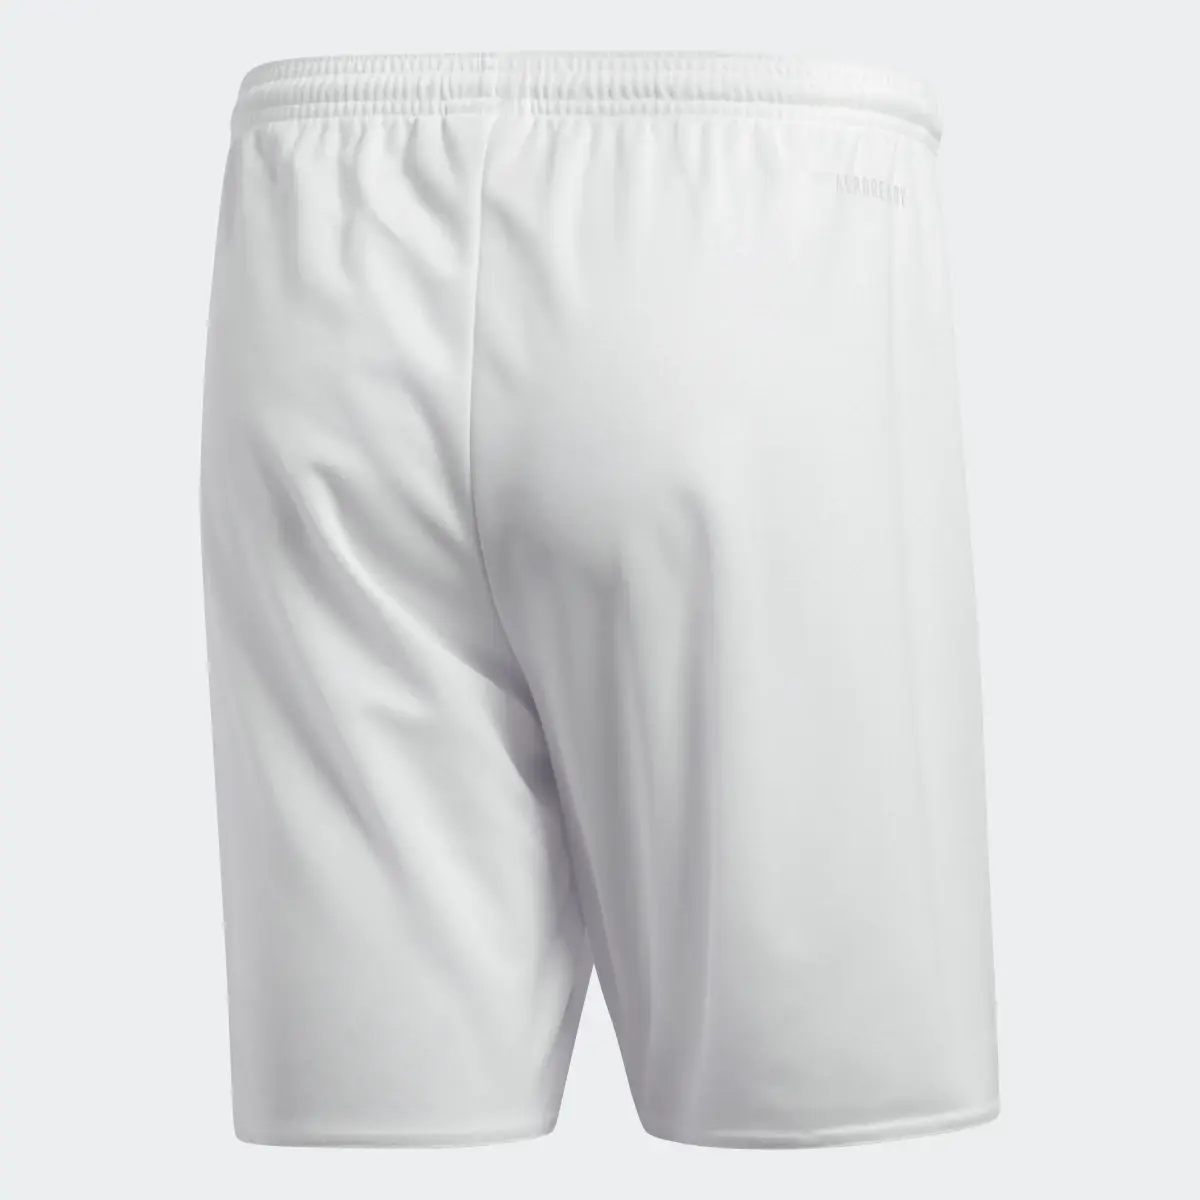 Adidas Parma 16 Shorts. 3